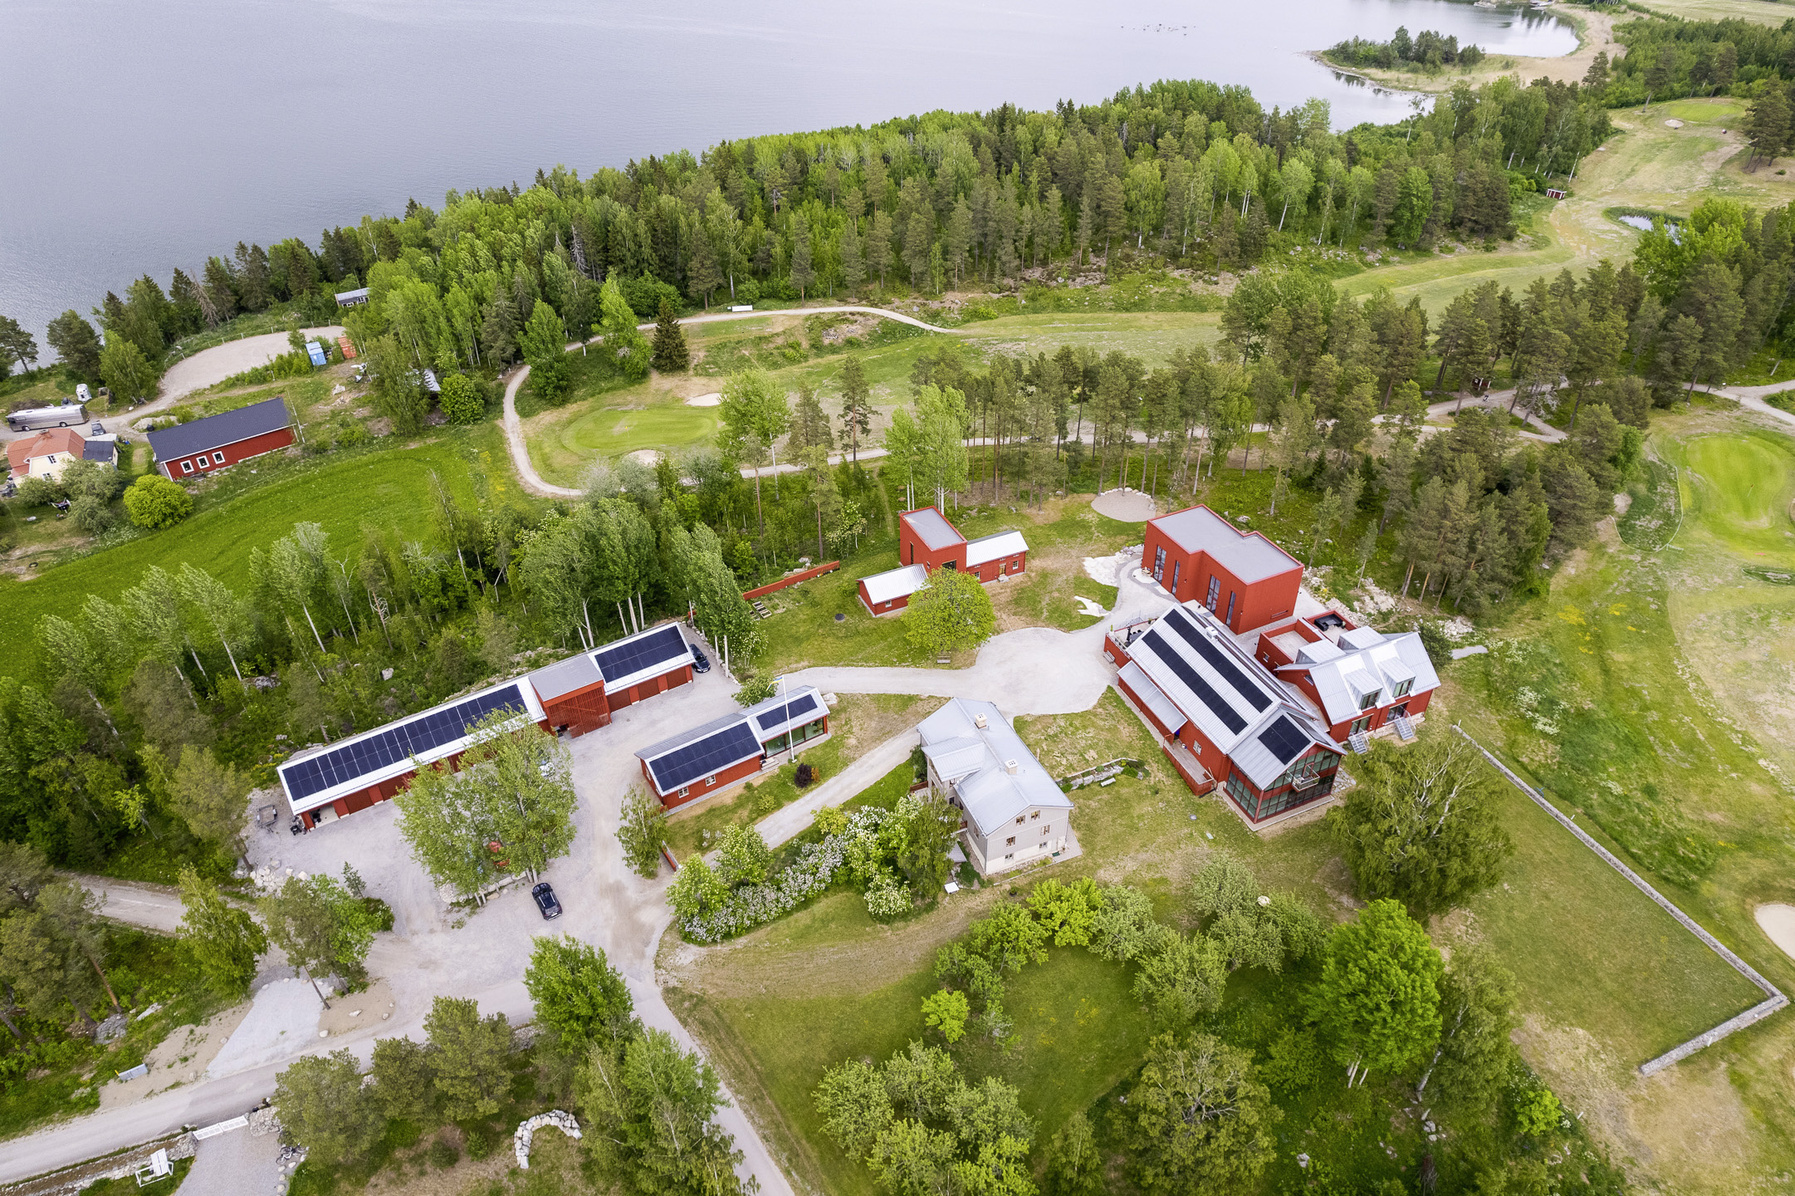 Stenberg housing estate in Hudiksvall, Sweden